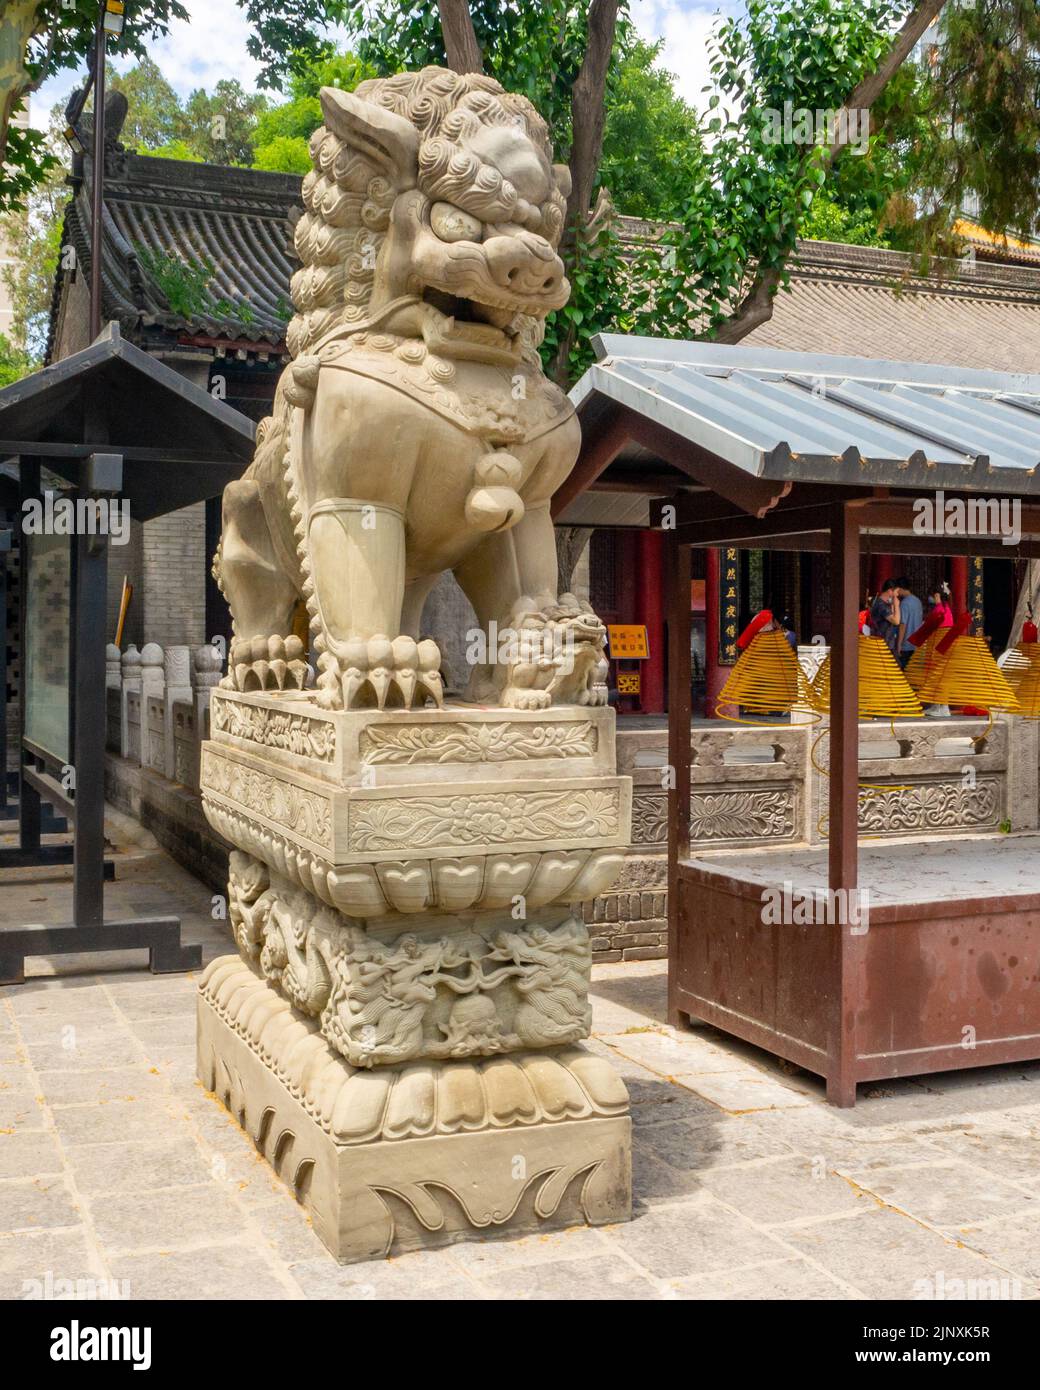 Sculpture d'un lion de pierre traditionnel chinois sur une place publique. Banque D'Images